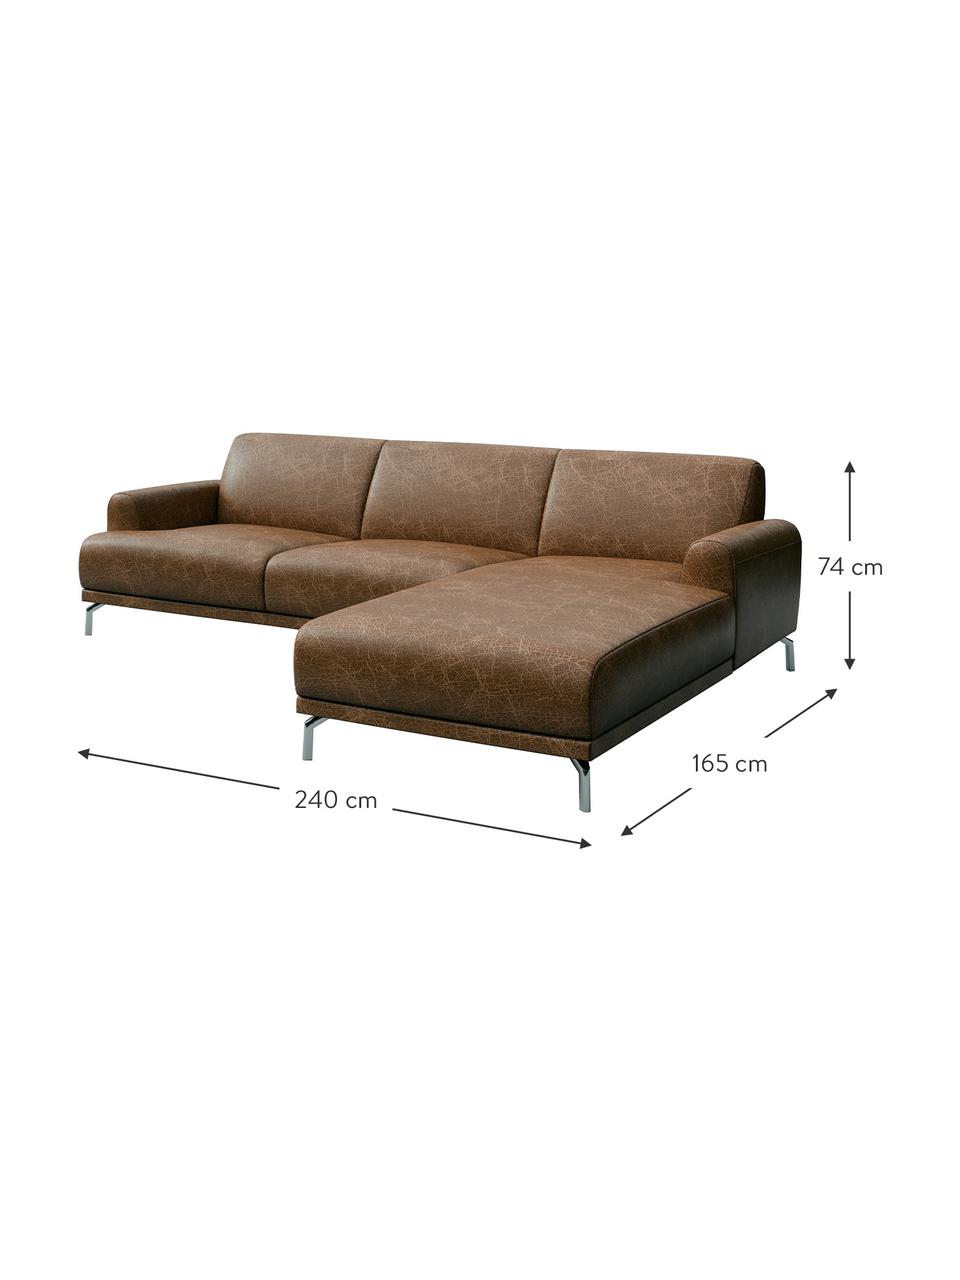 Sofa narożna ze skóry Puzo, Tapicerka: 100% skóra, Nogi: metal lakierowany, Brązowy z wykończeniem vintage, S 240 x G 165 cm